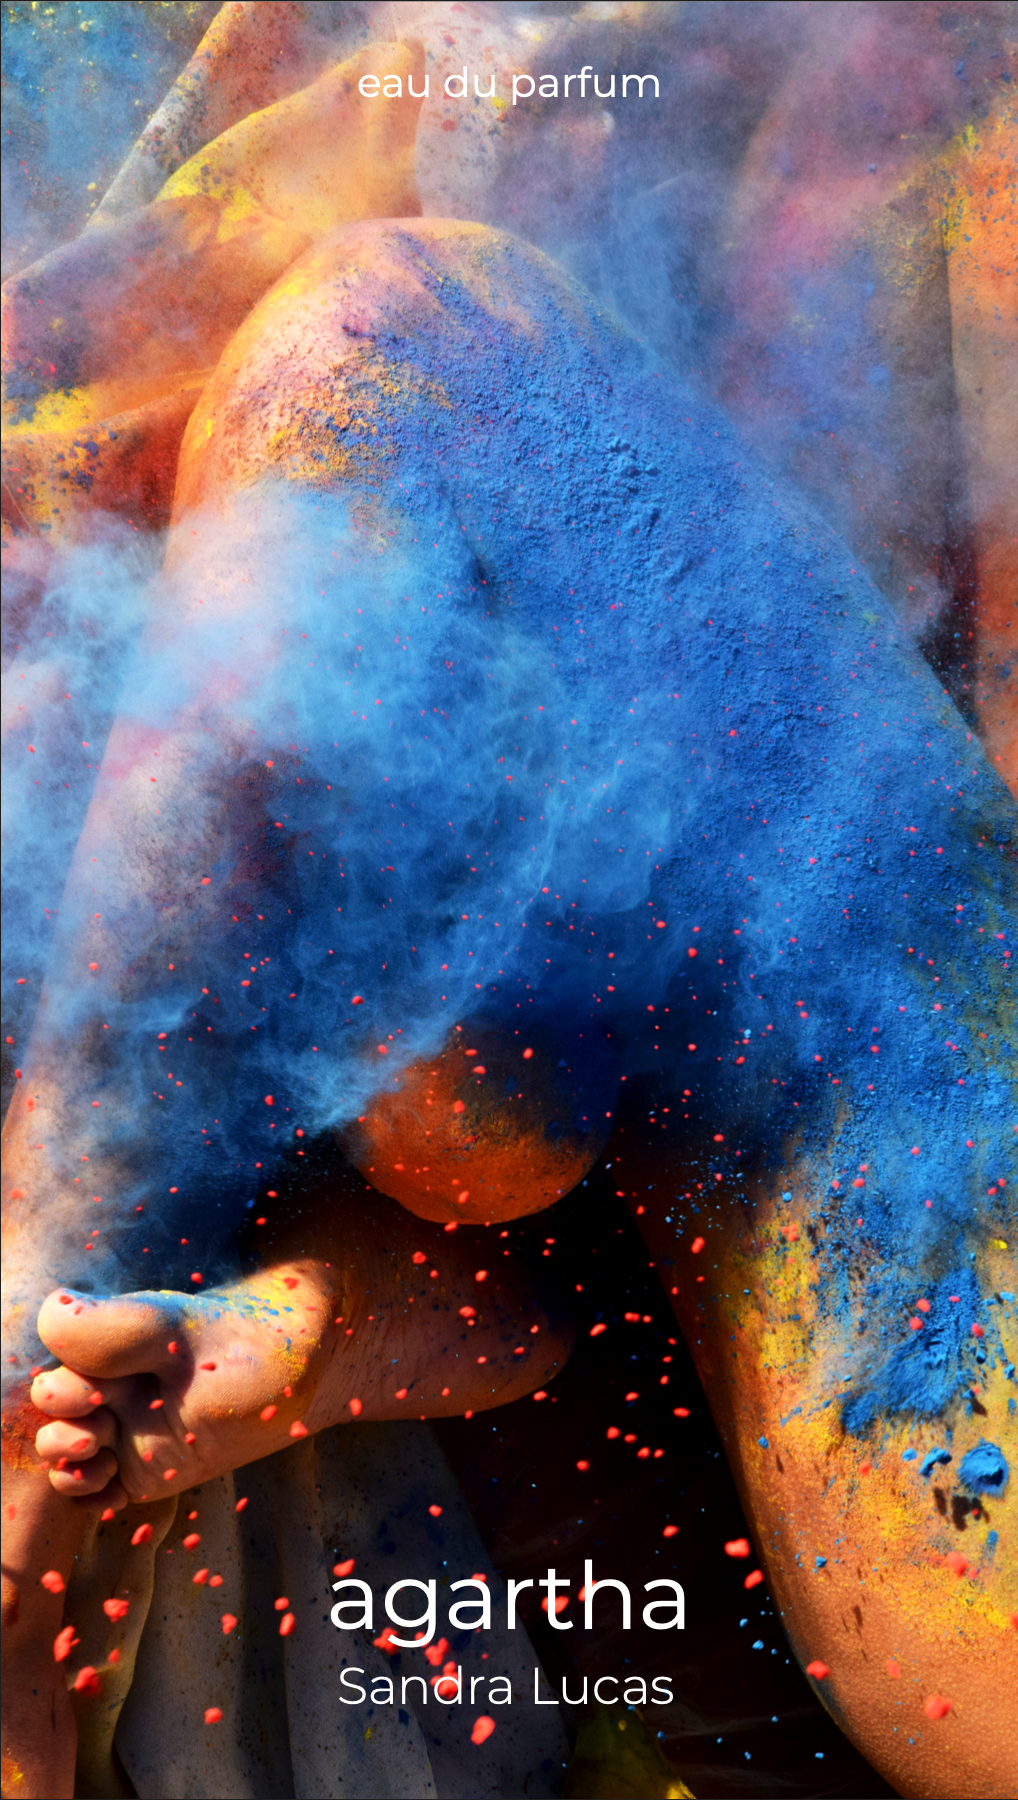 Cartell del resultat final de la sessió de fotografia realitzada per Mersi Studio. Surt una model femenina amb ple de pols pel cos. Aquesta pols és del Festival Hindú Holi Fest. La model està envoltada d'una tela blanca.